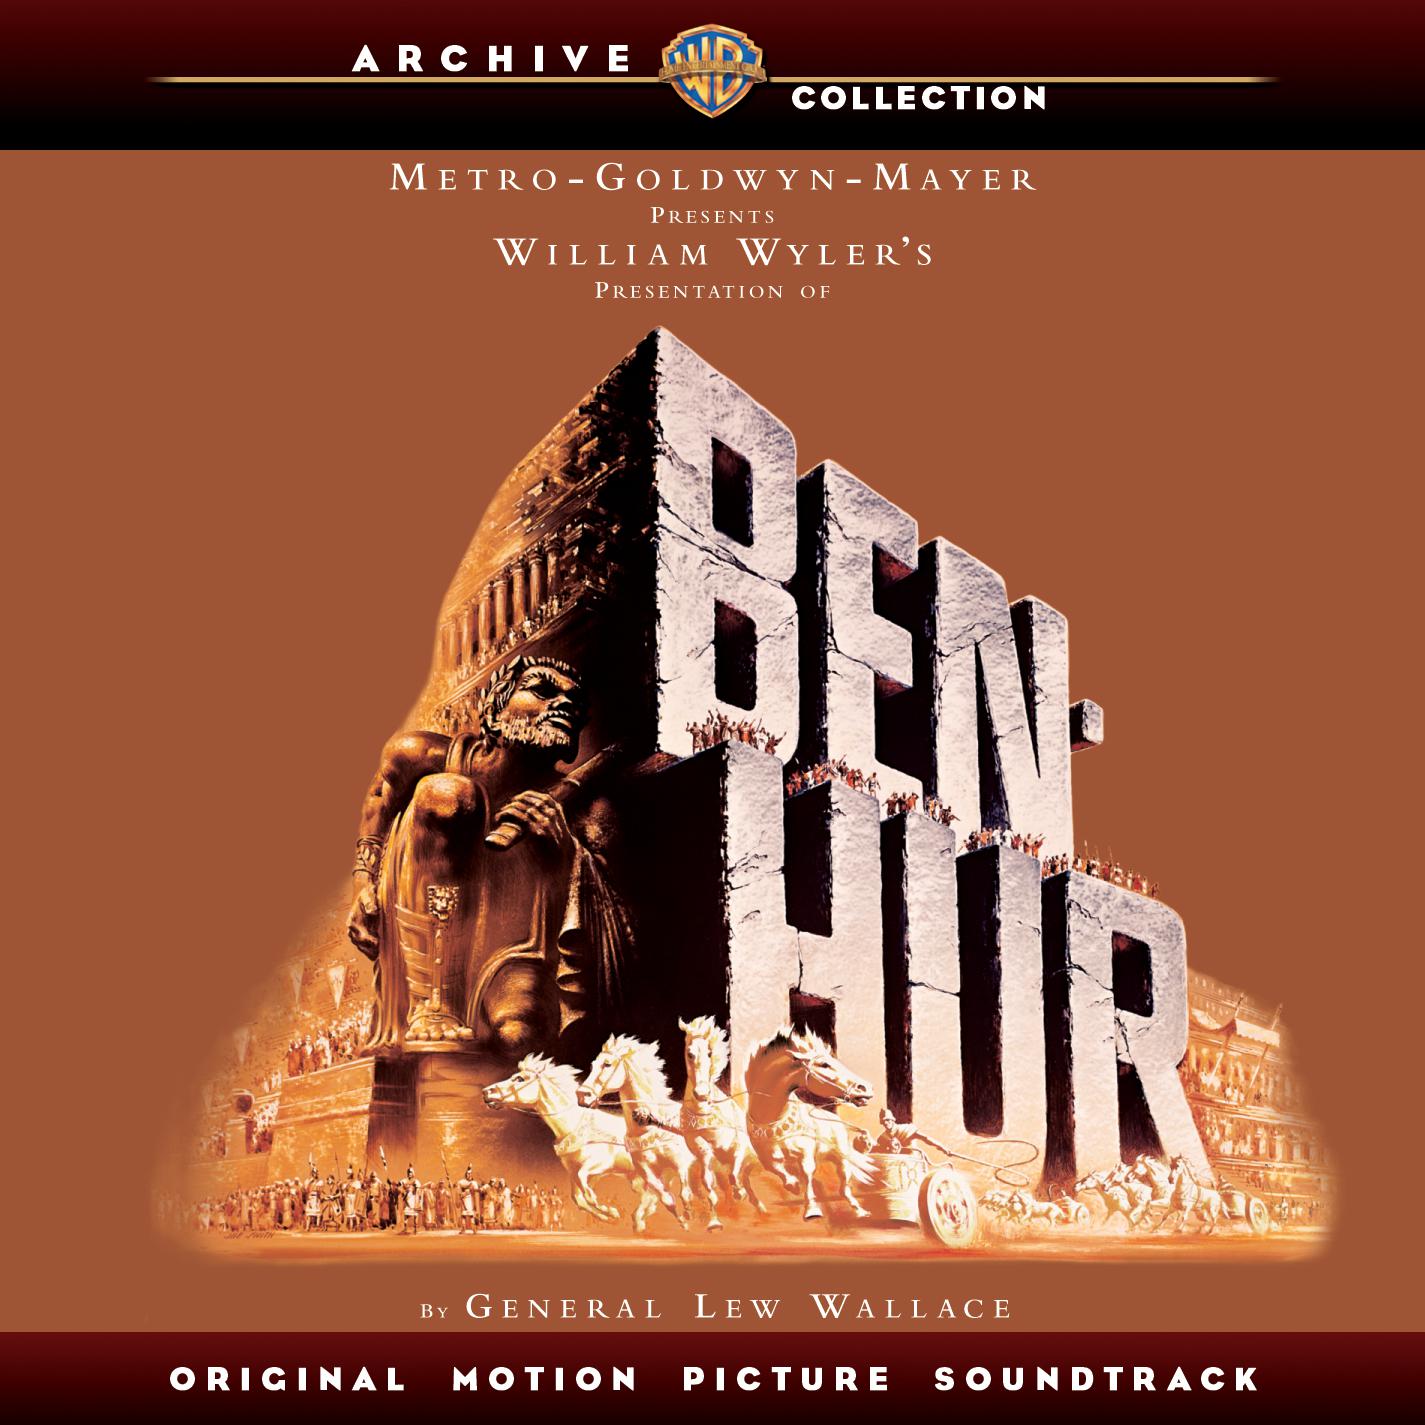 Ben Hur (Original Motion Picture Soundtrack) [Deluxe Version]